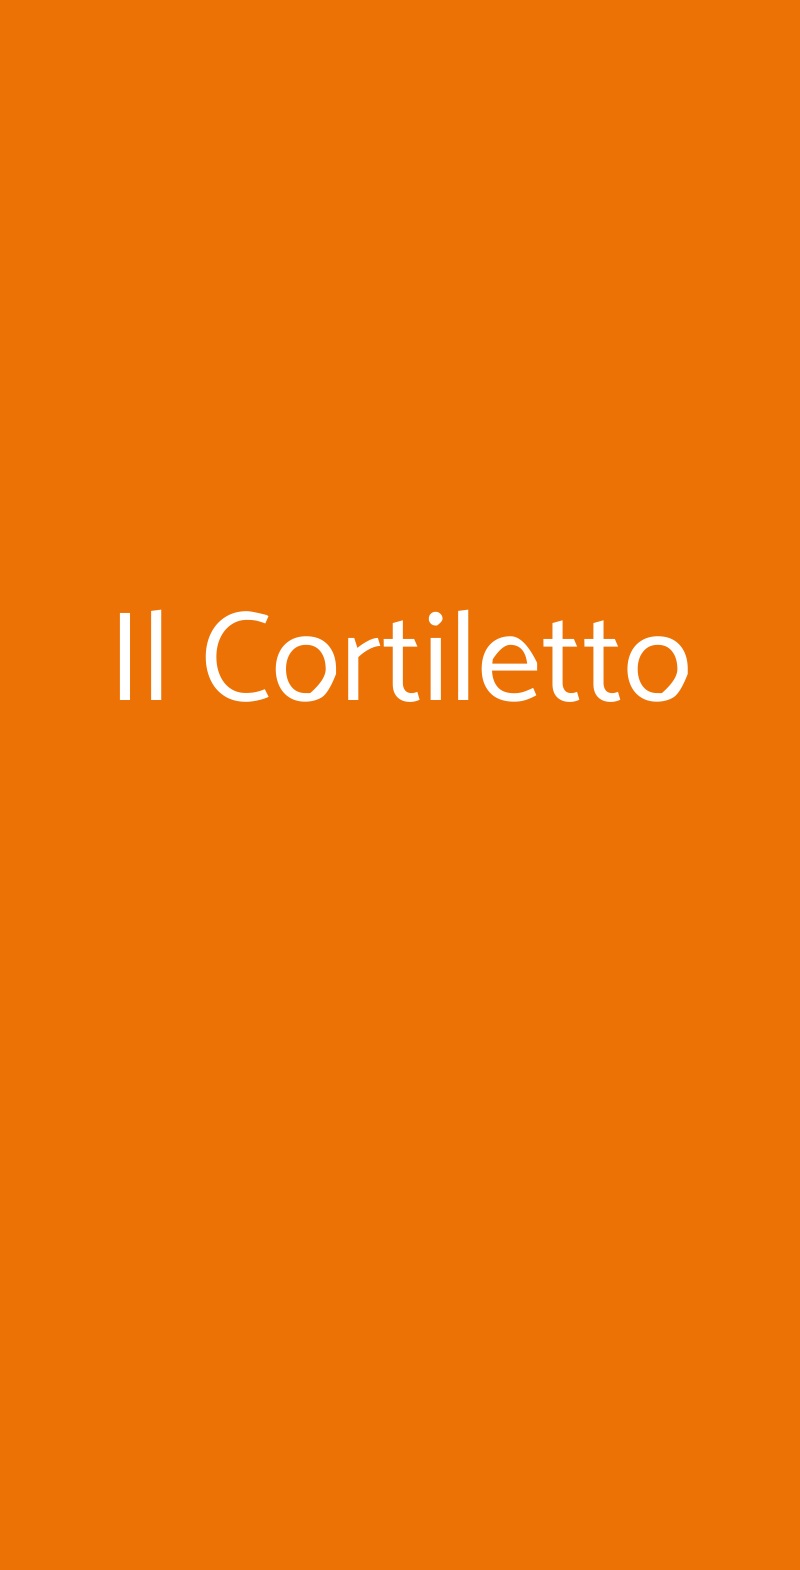 Il Cortiletto Milano menù 1 pagina